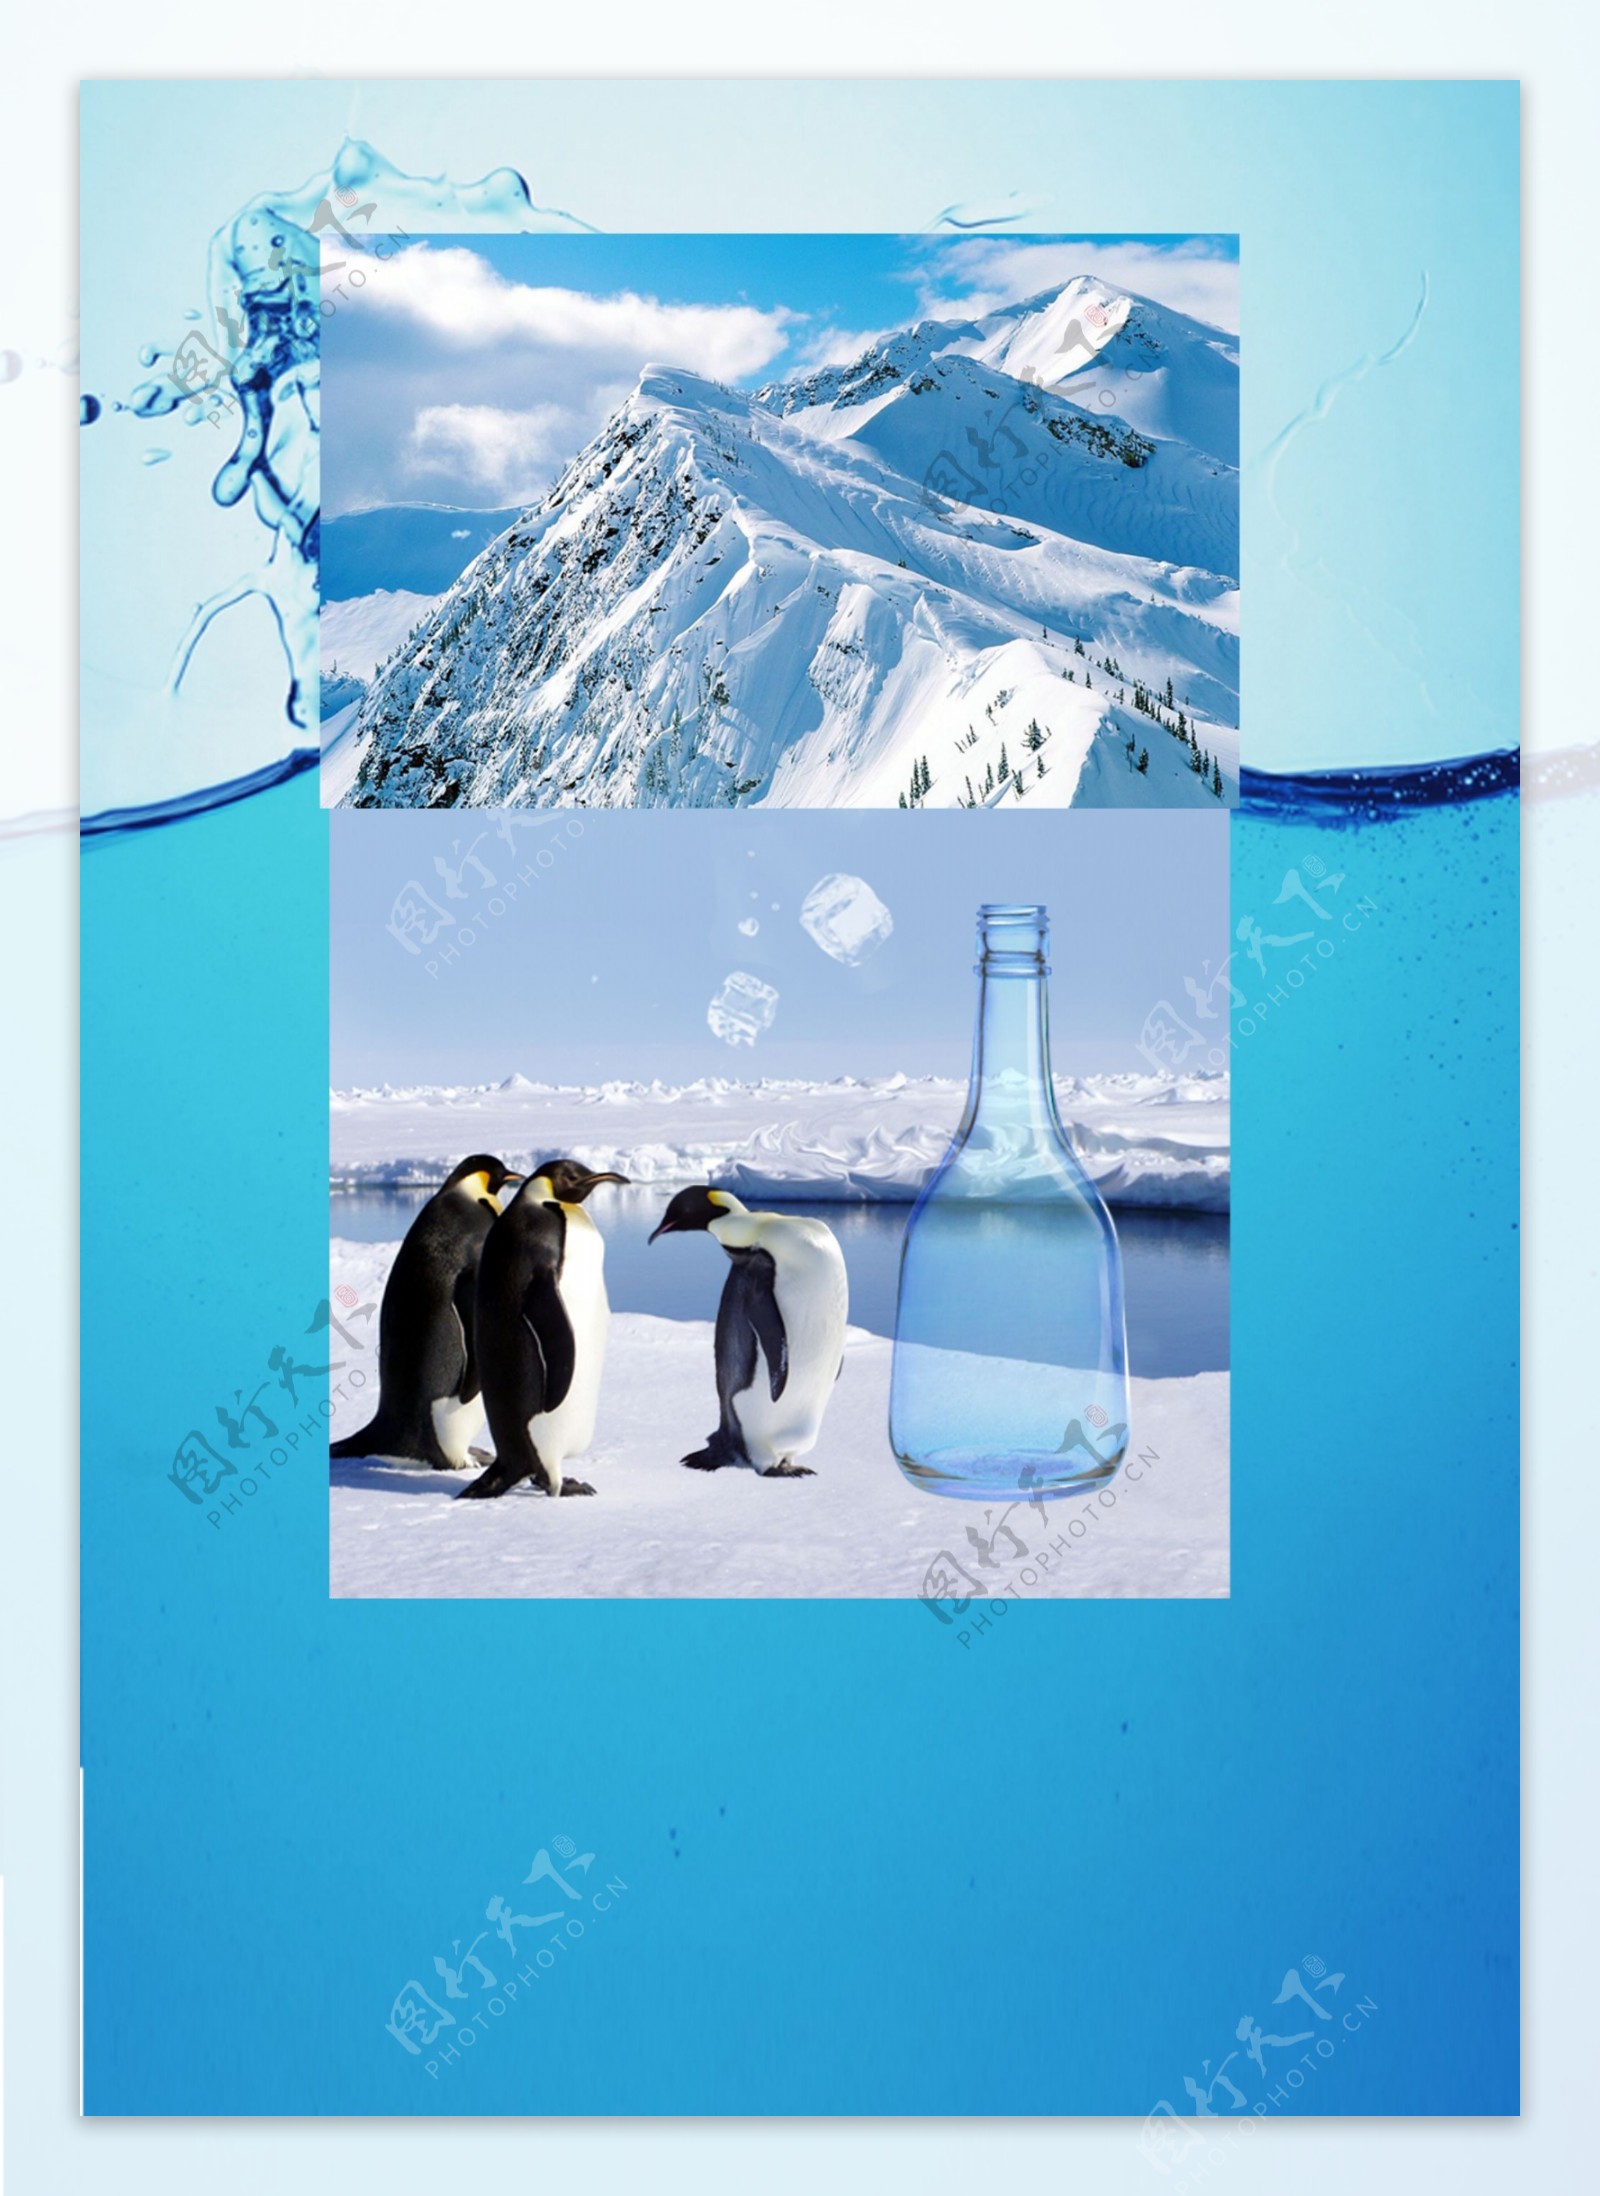 企鹅瓶广告图片